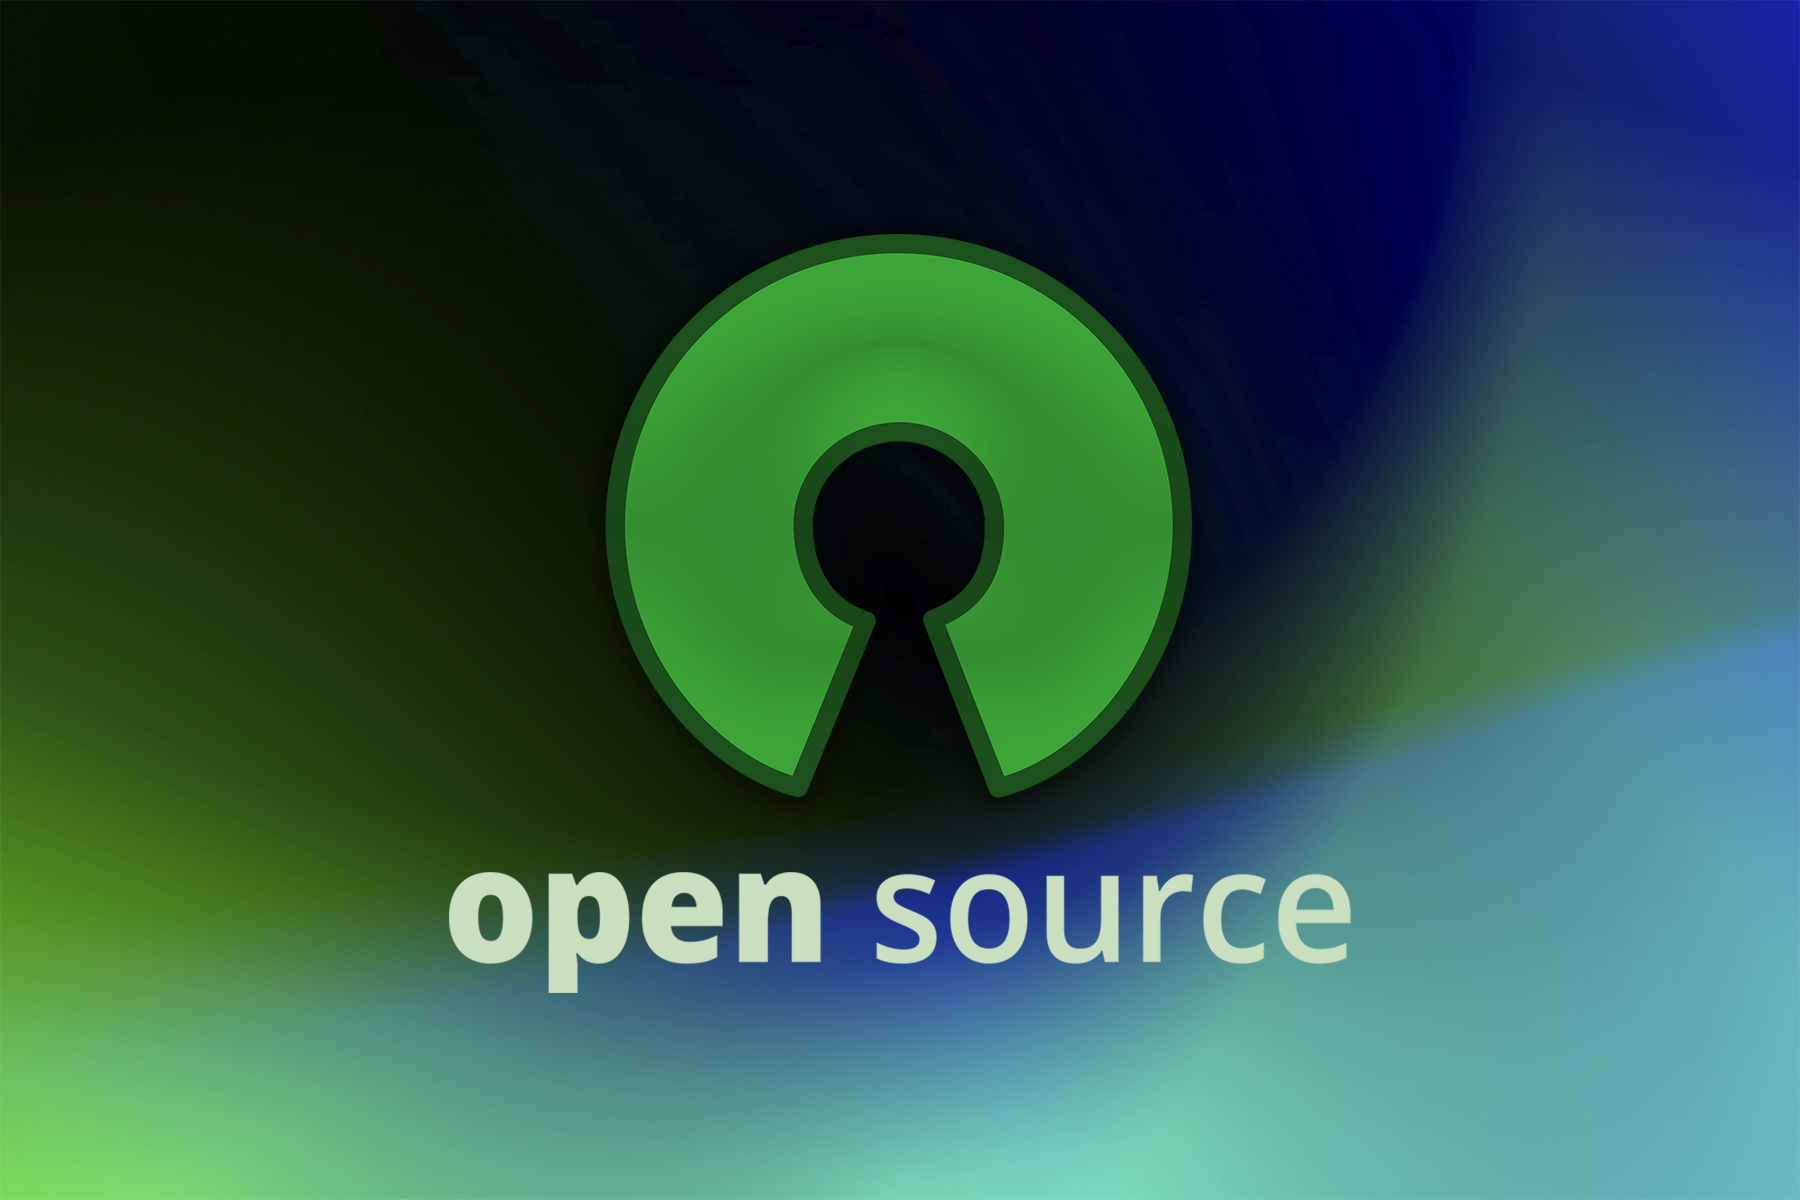 Source license. Лицензии open source. Картинки с открытой лицензией на использование.